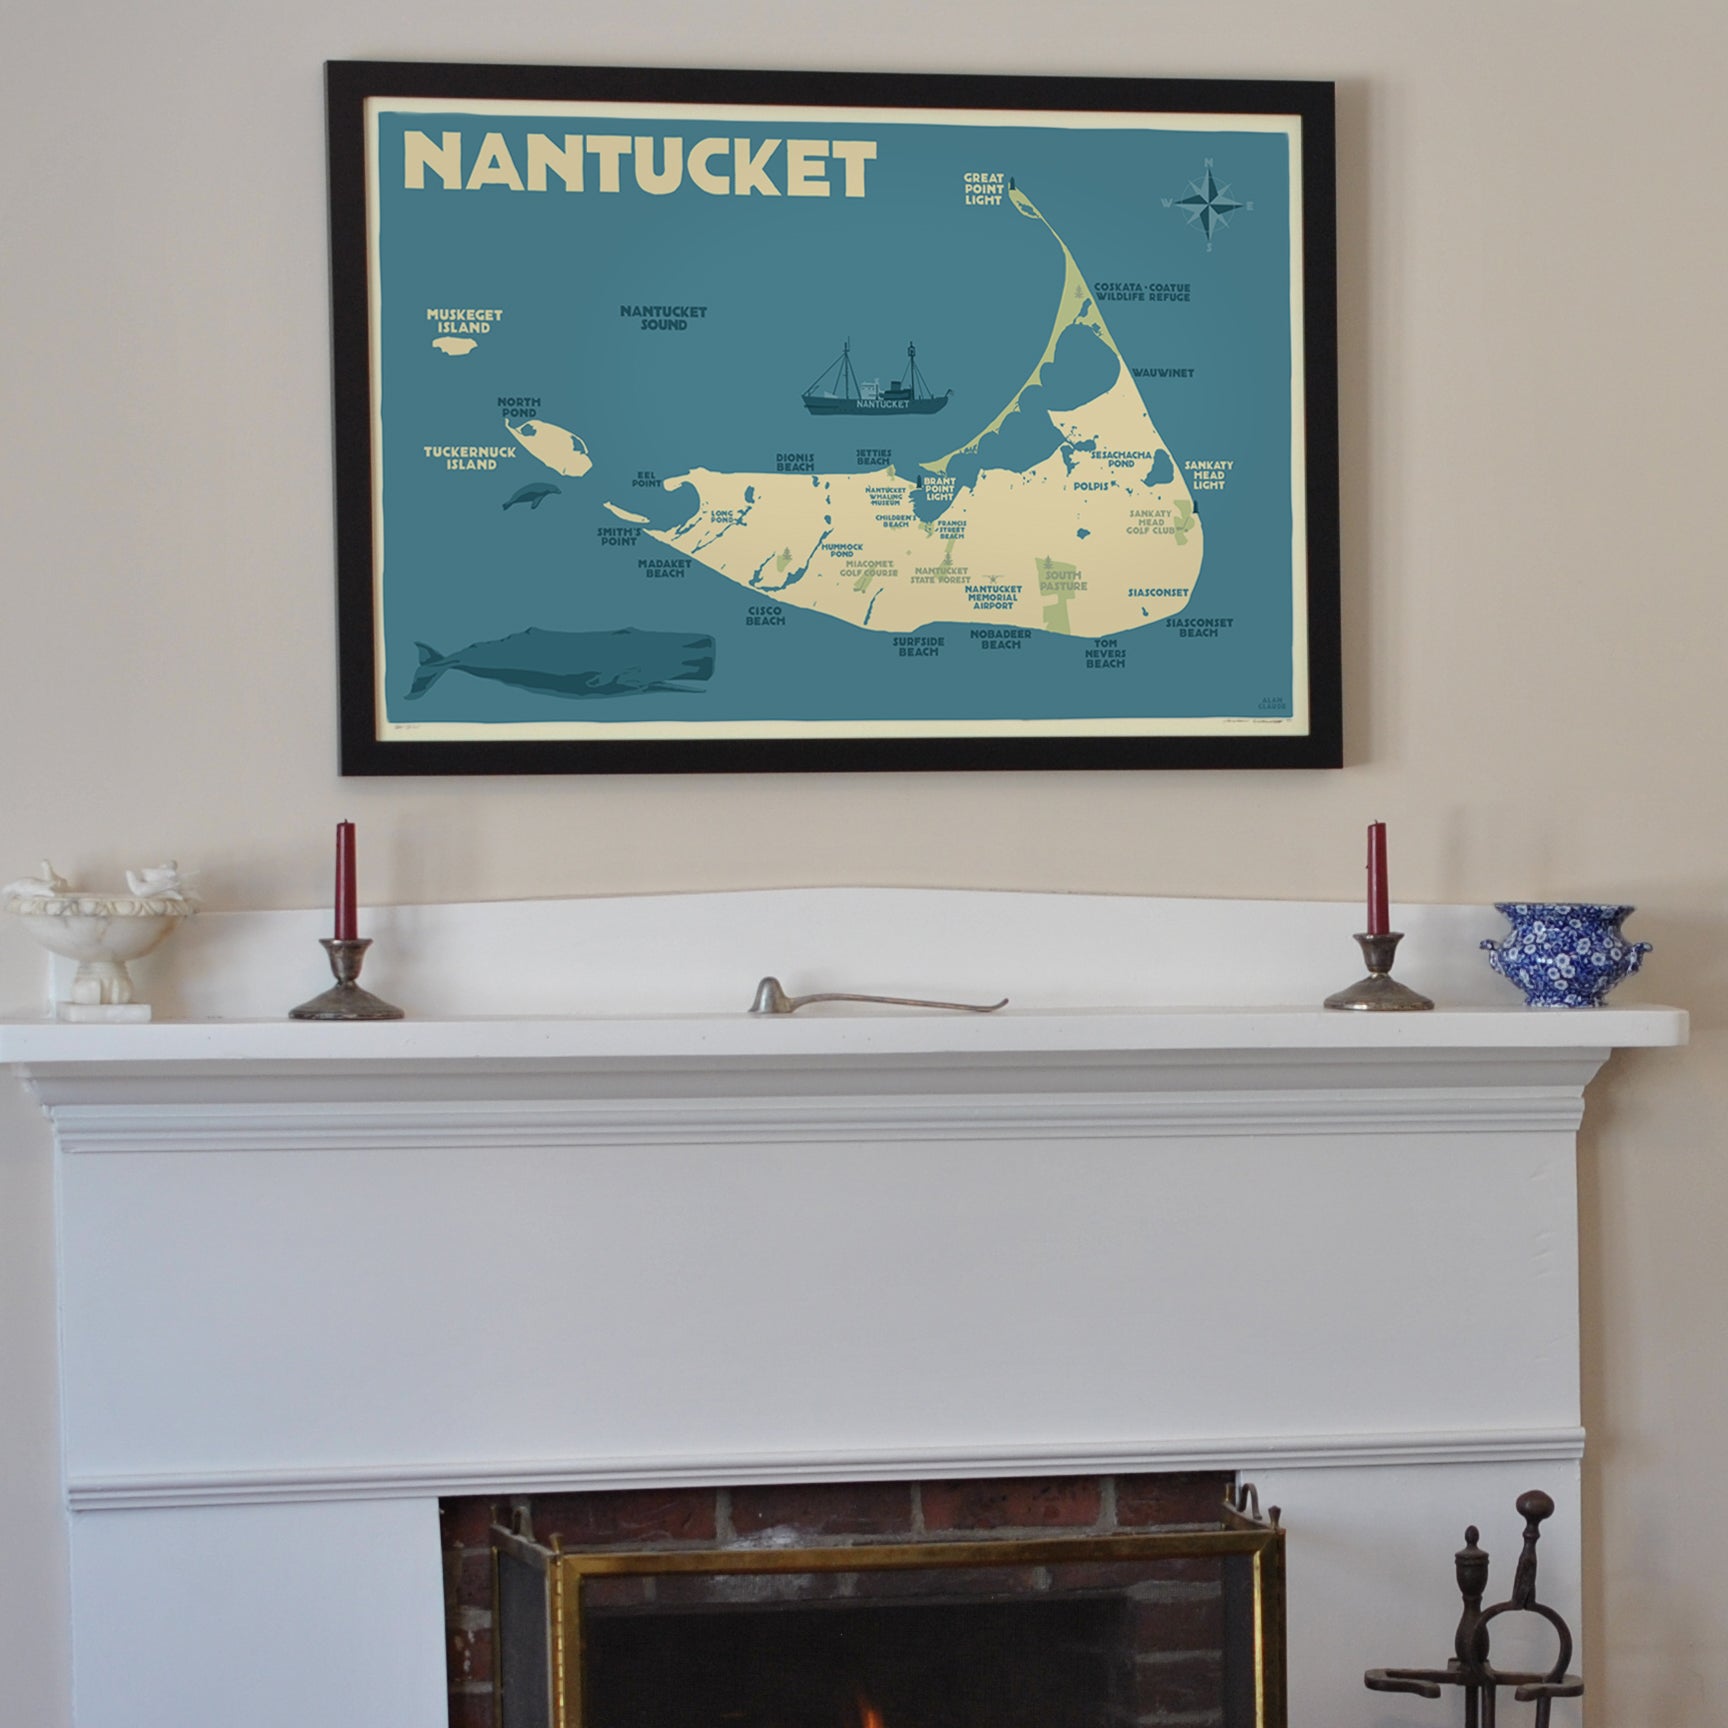 Nantucket Map Art Print 24" x 36" Framed Travel Poster By Alan Claude  - Massachusetts